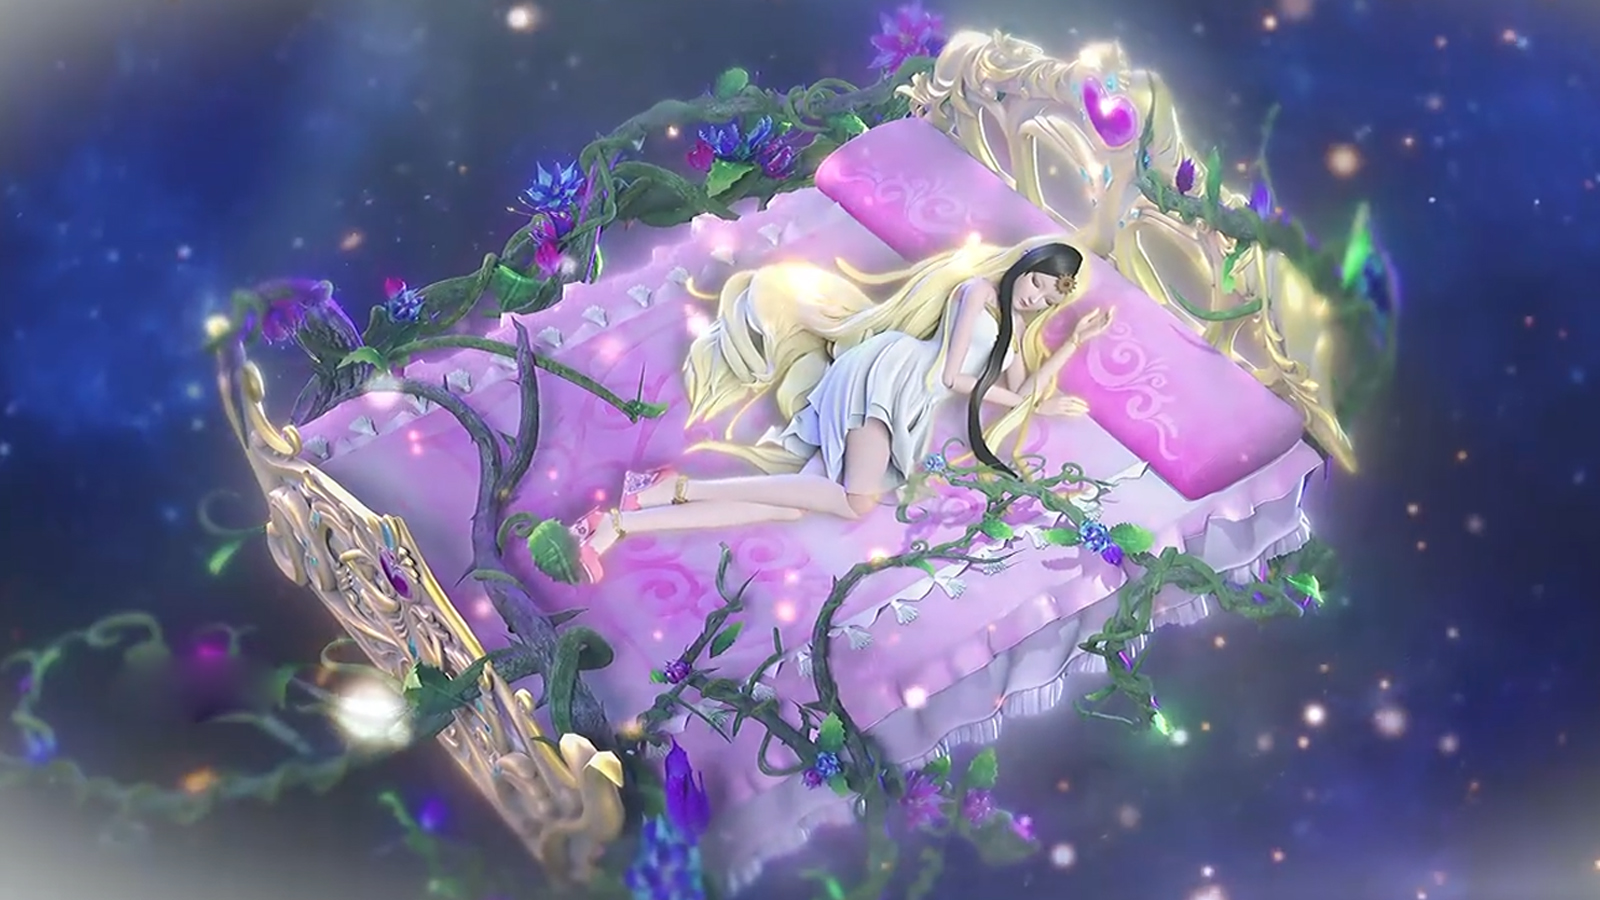 精灵梦叶罗丽:梦冰莹的床唯美漂亮,漫迷:可我喜欢孔雀的床